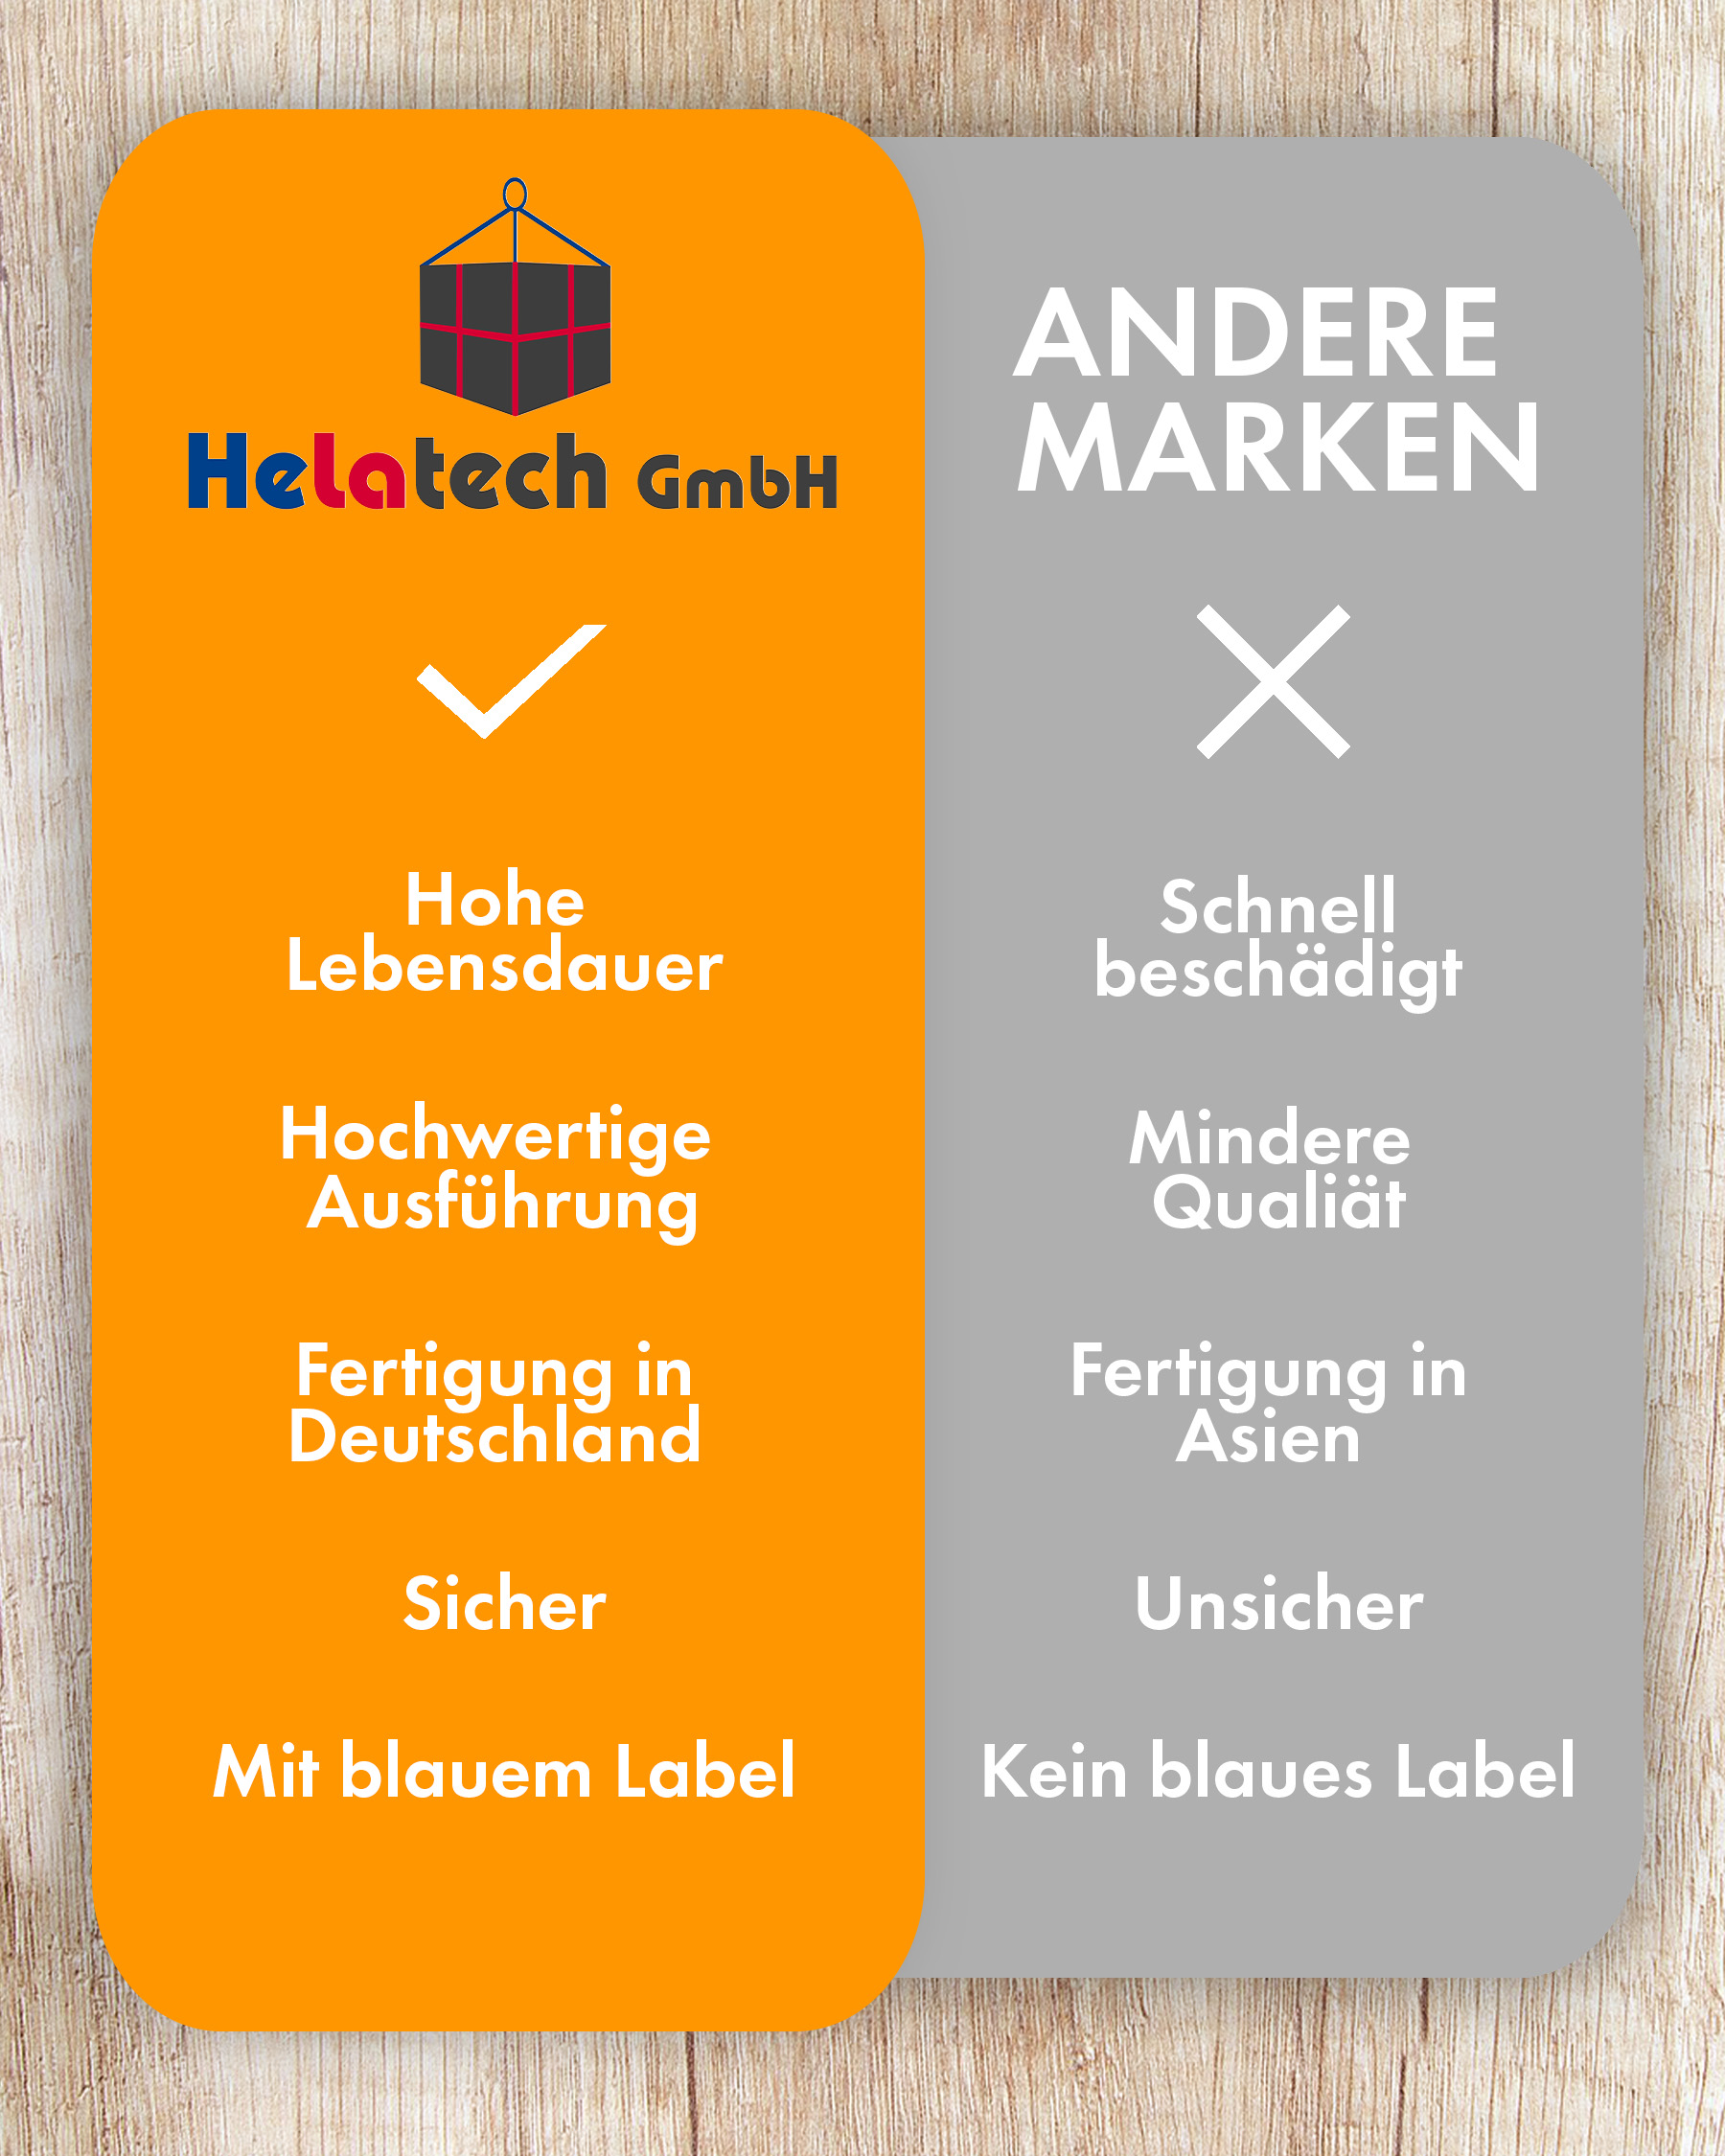 wichtige Merkmale von Helatech GmbH:hochwertige Zurrgurte garantiert beste Ladungssicherung